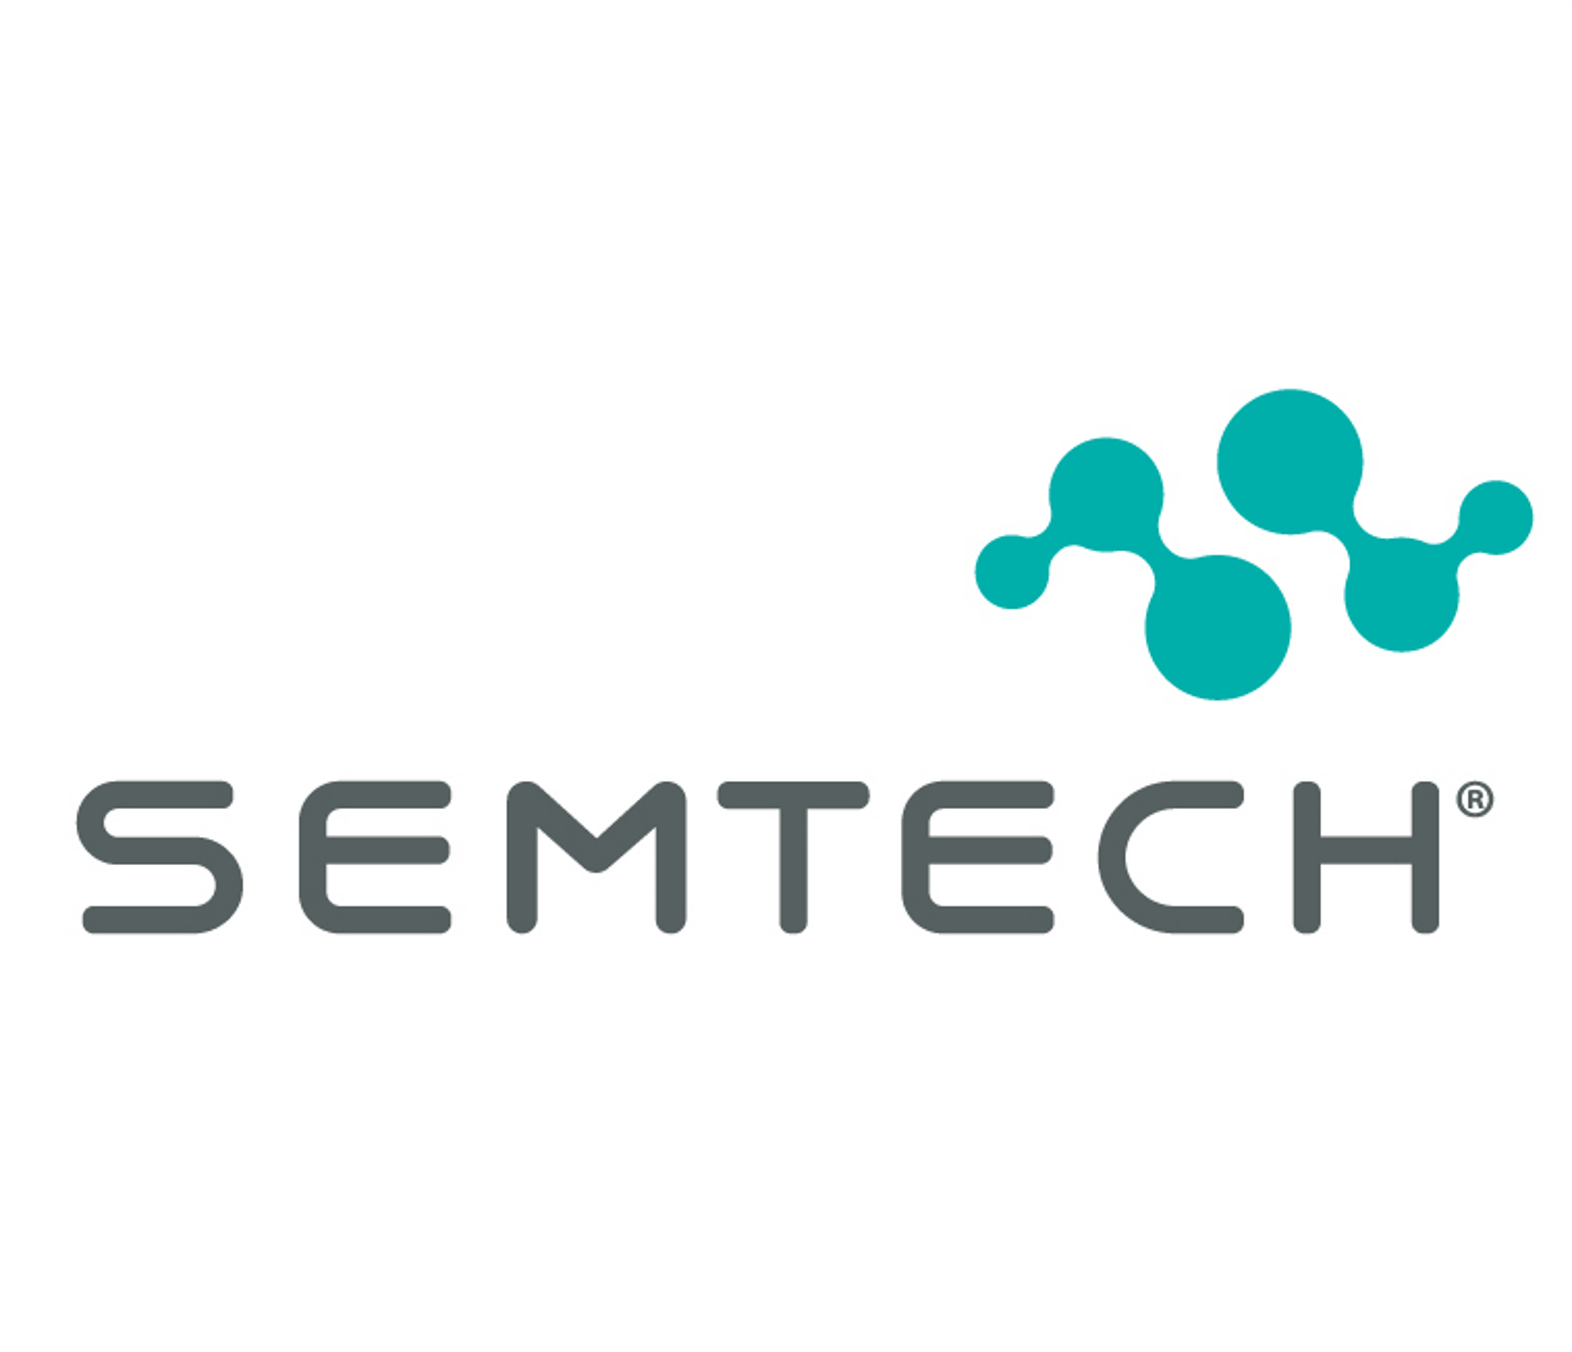 London Design Awards Winner - Semtech Rebrand